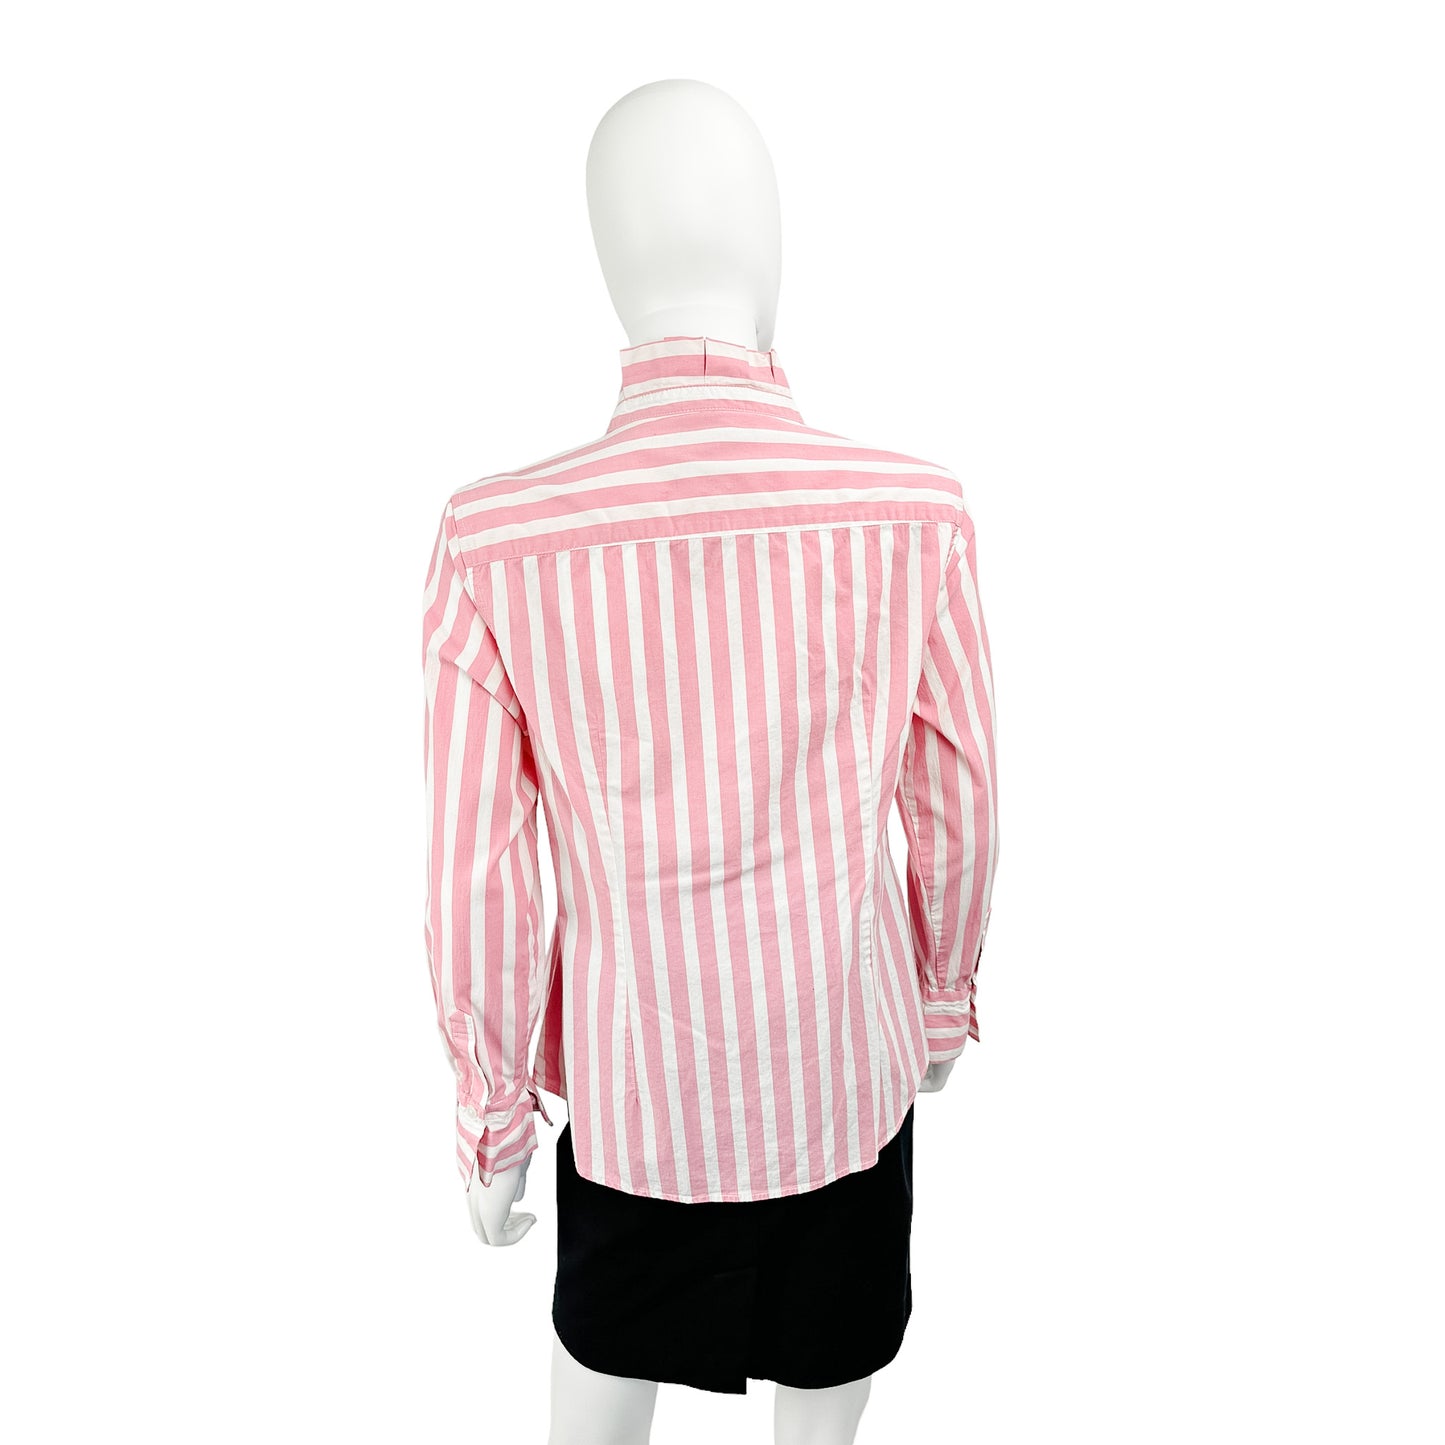 Banana Republic Pink & White Striped Button-Down Size 12P